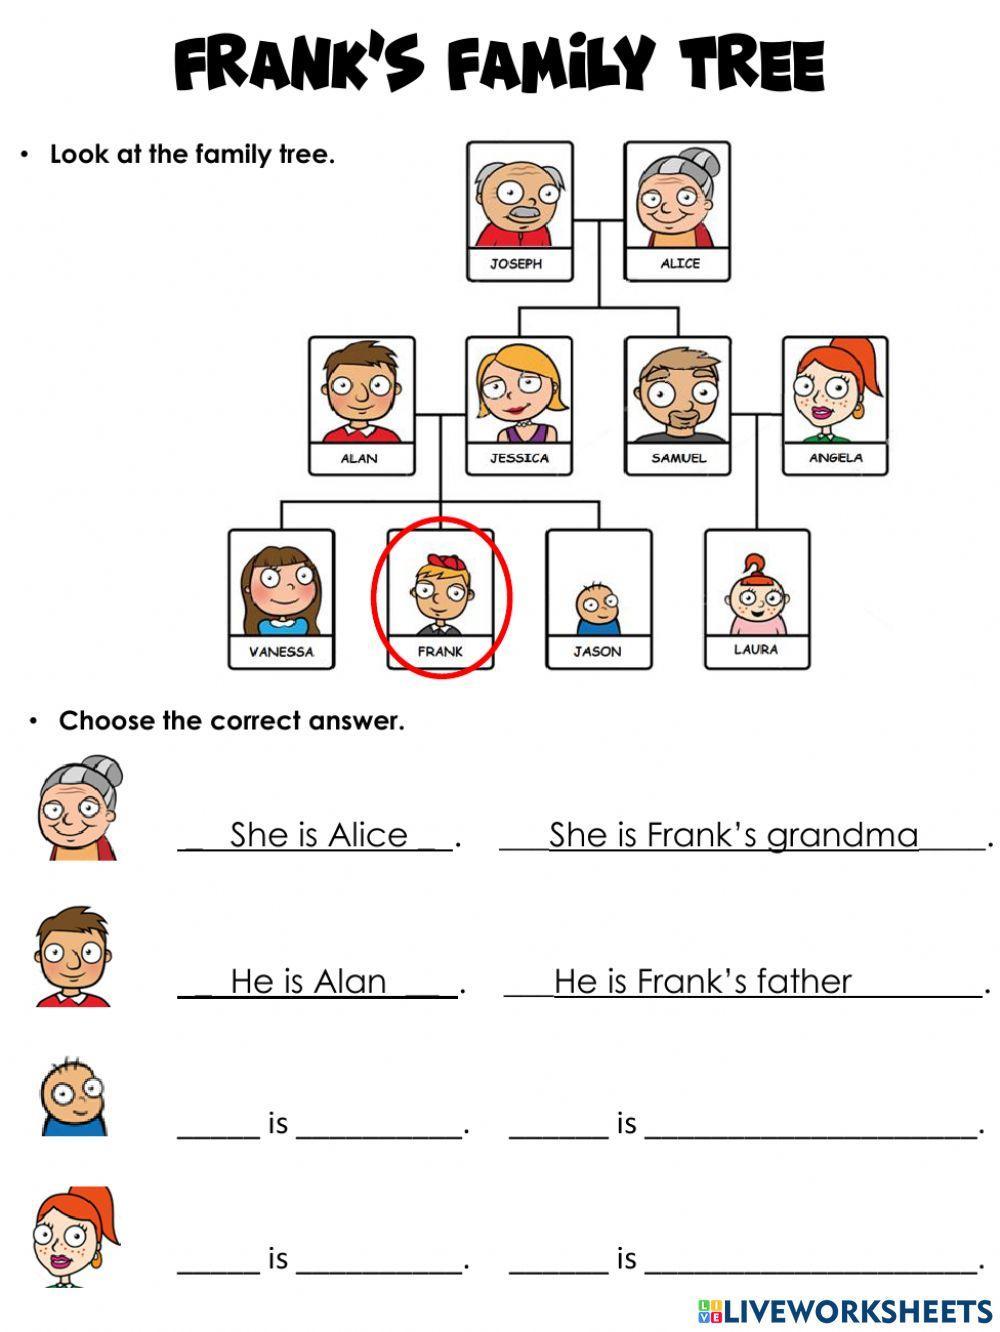 Frank's Family Tree